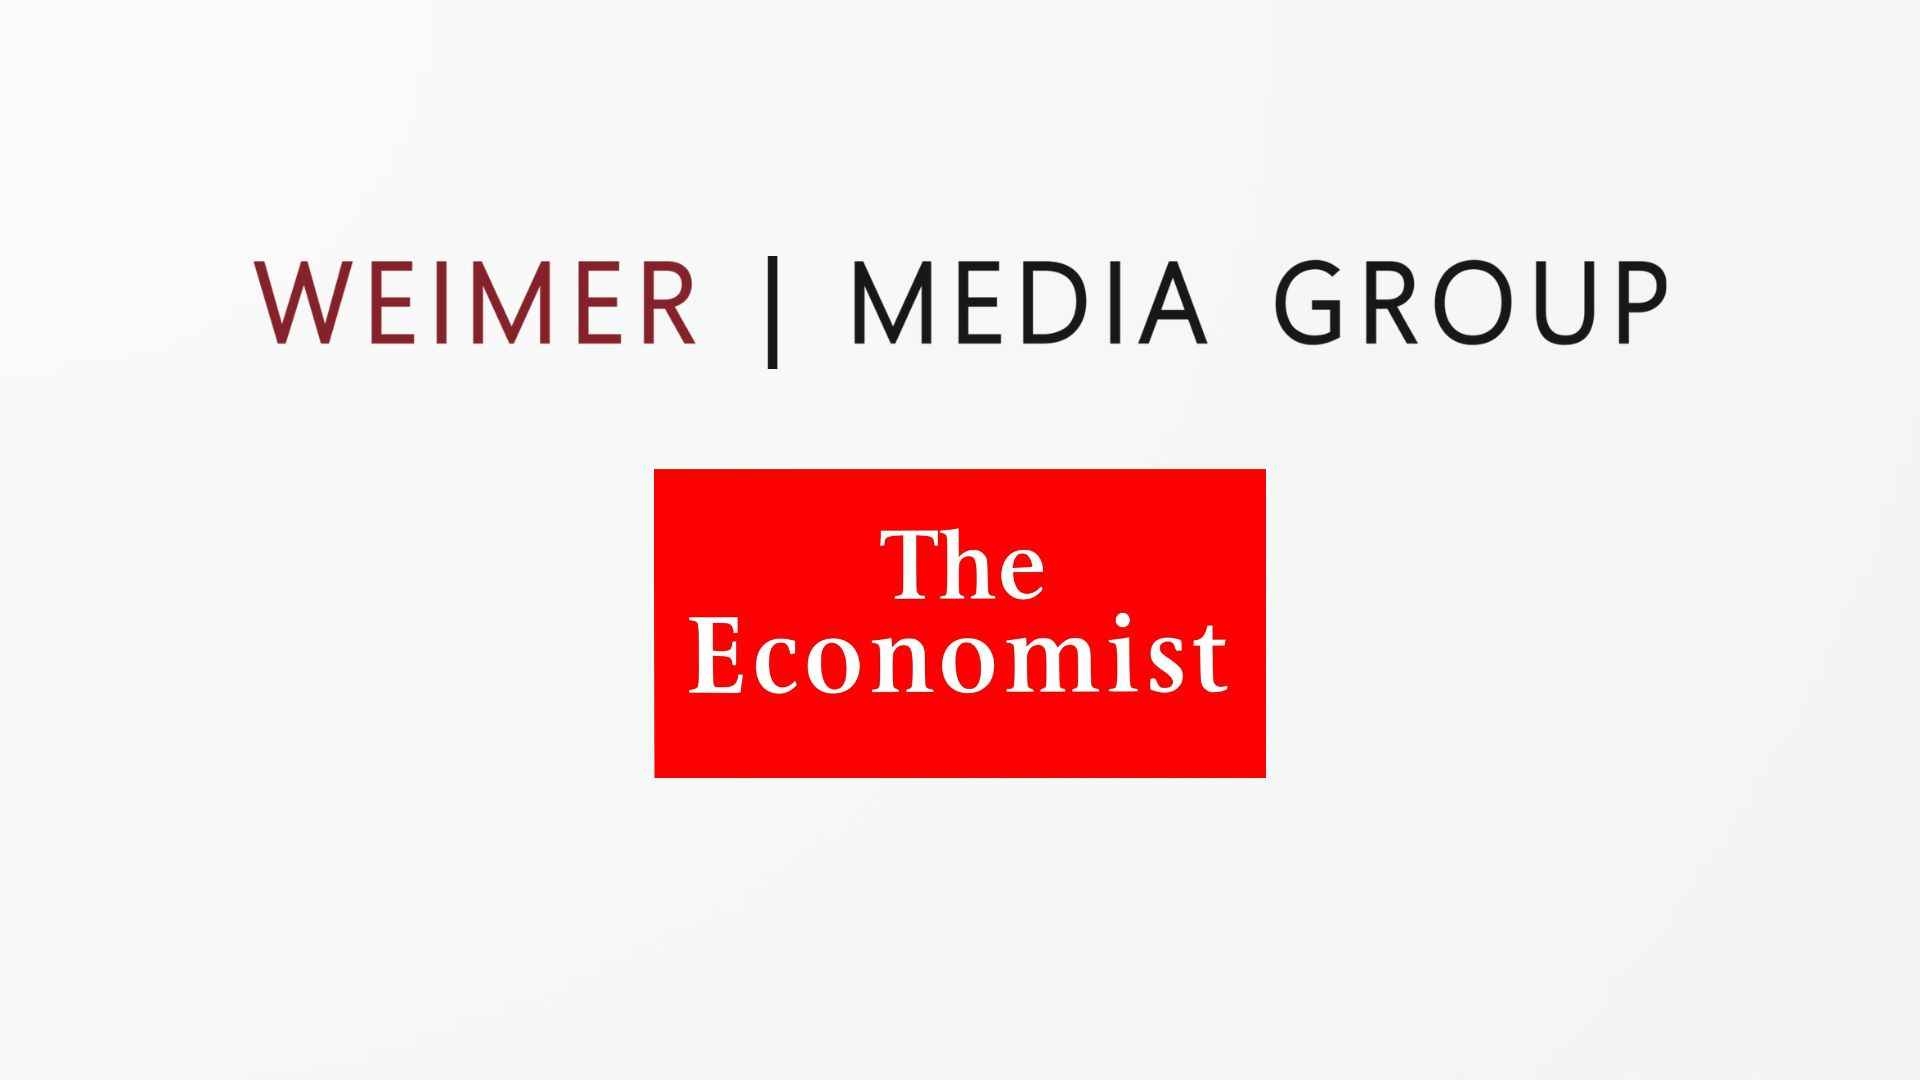 Weimer Media Group geht Partnerschaft mit "The Economist" ein